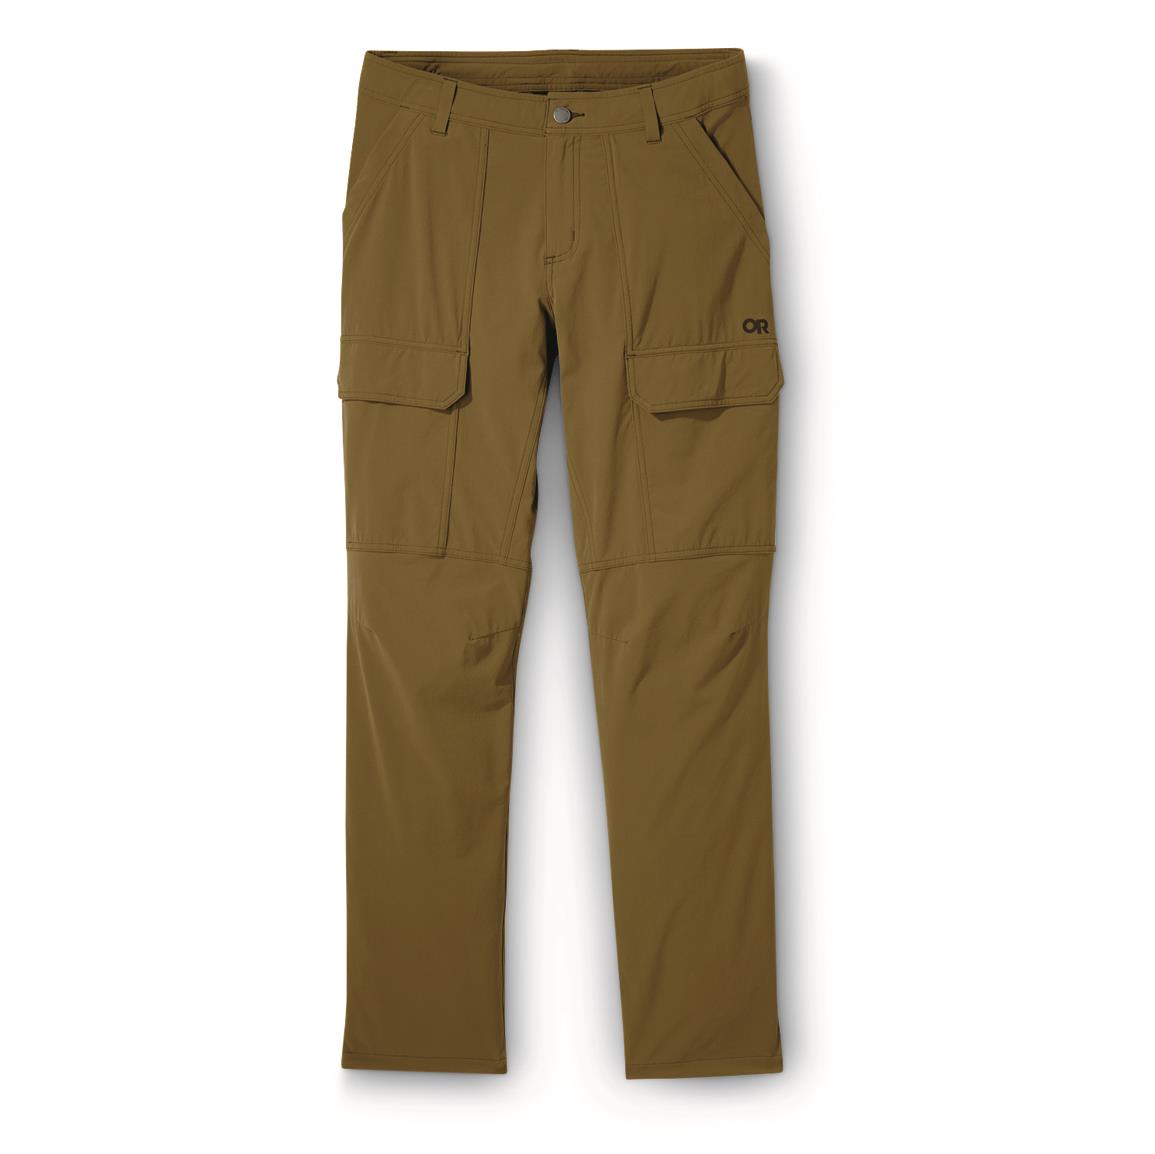 Under Armour Men's Alpha Cargo Pants - 733052, Jeans & Pants at Sportsman's  Guide